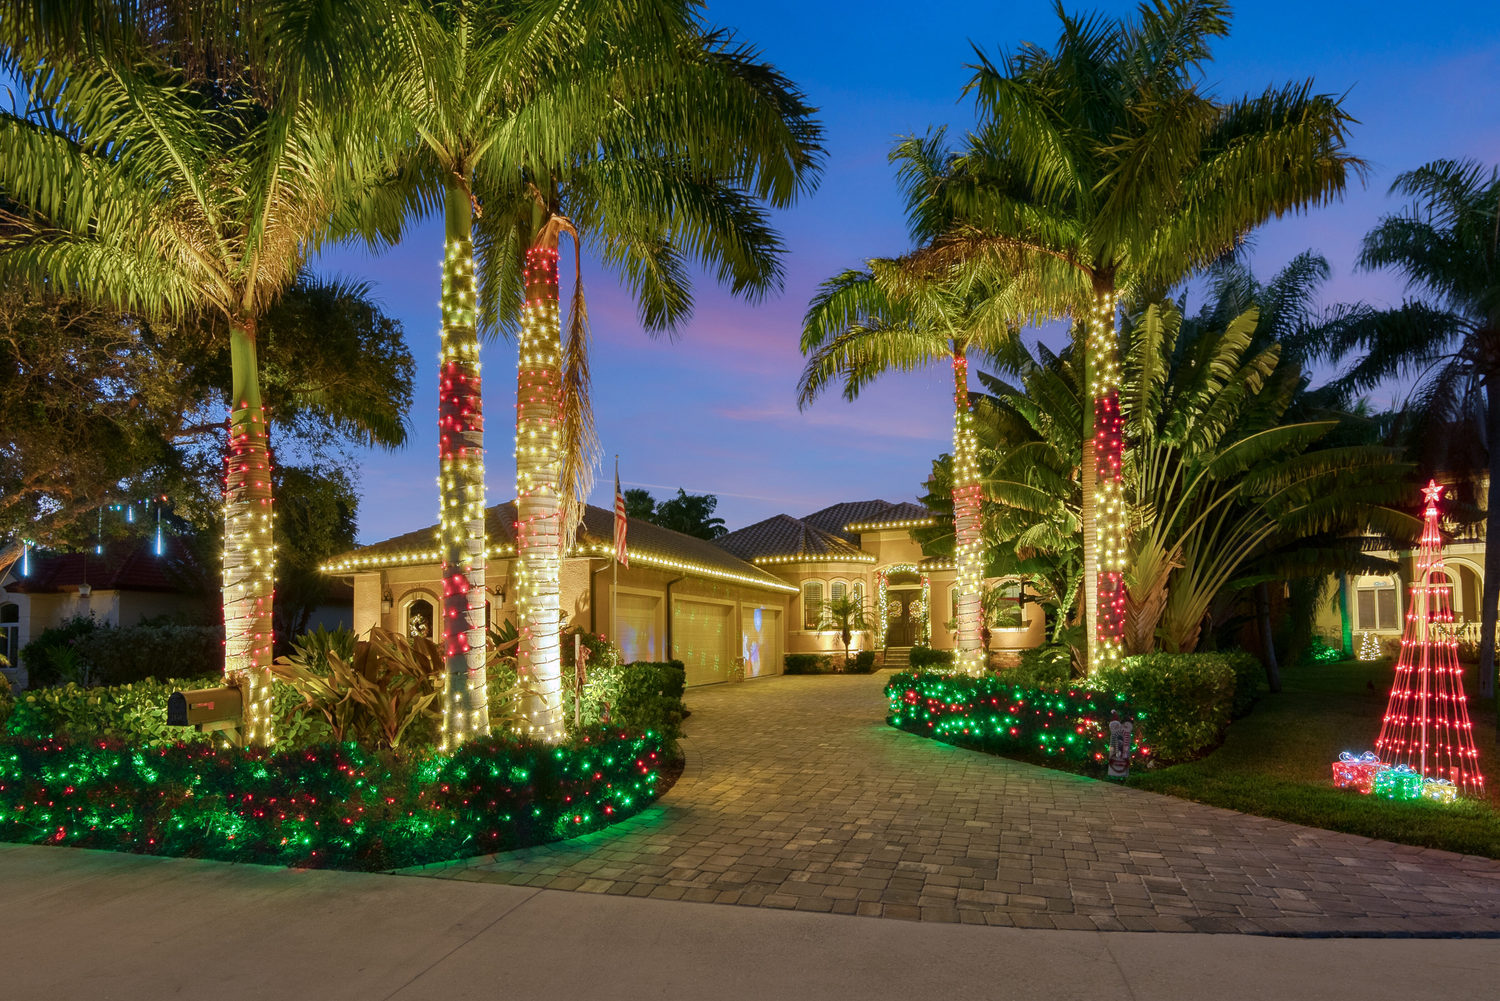 Florida home with Christmas lights 